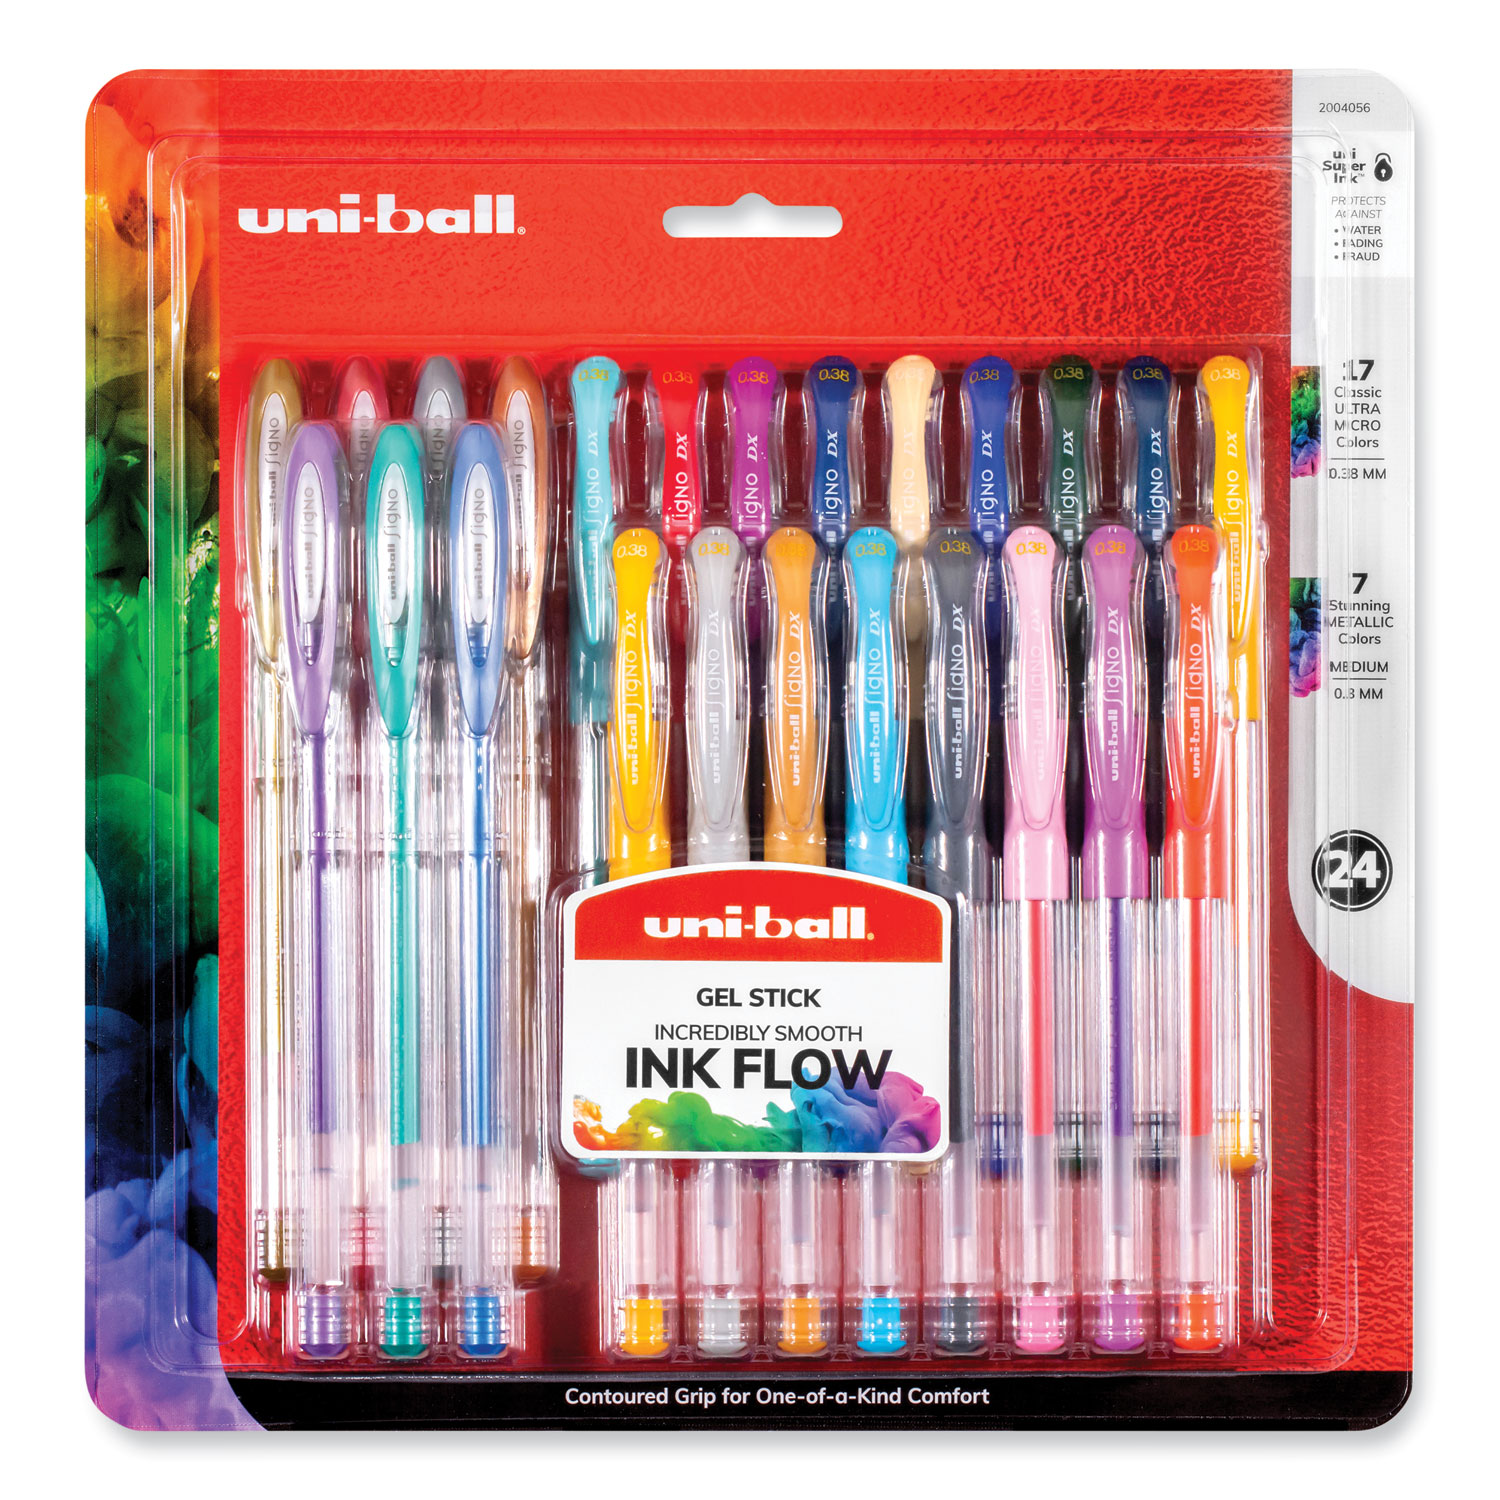 24 Fineliner Color Pens Set, 24 Colors Micro Line Pens For Sketch